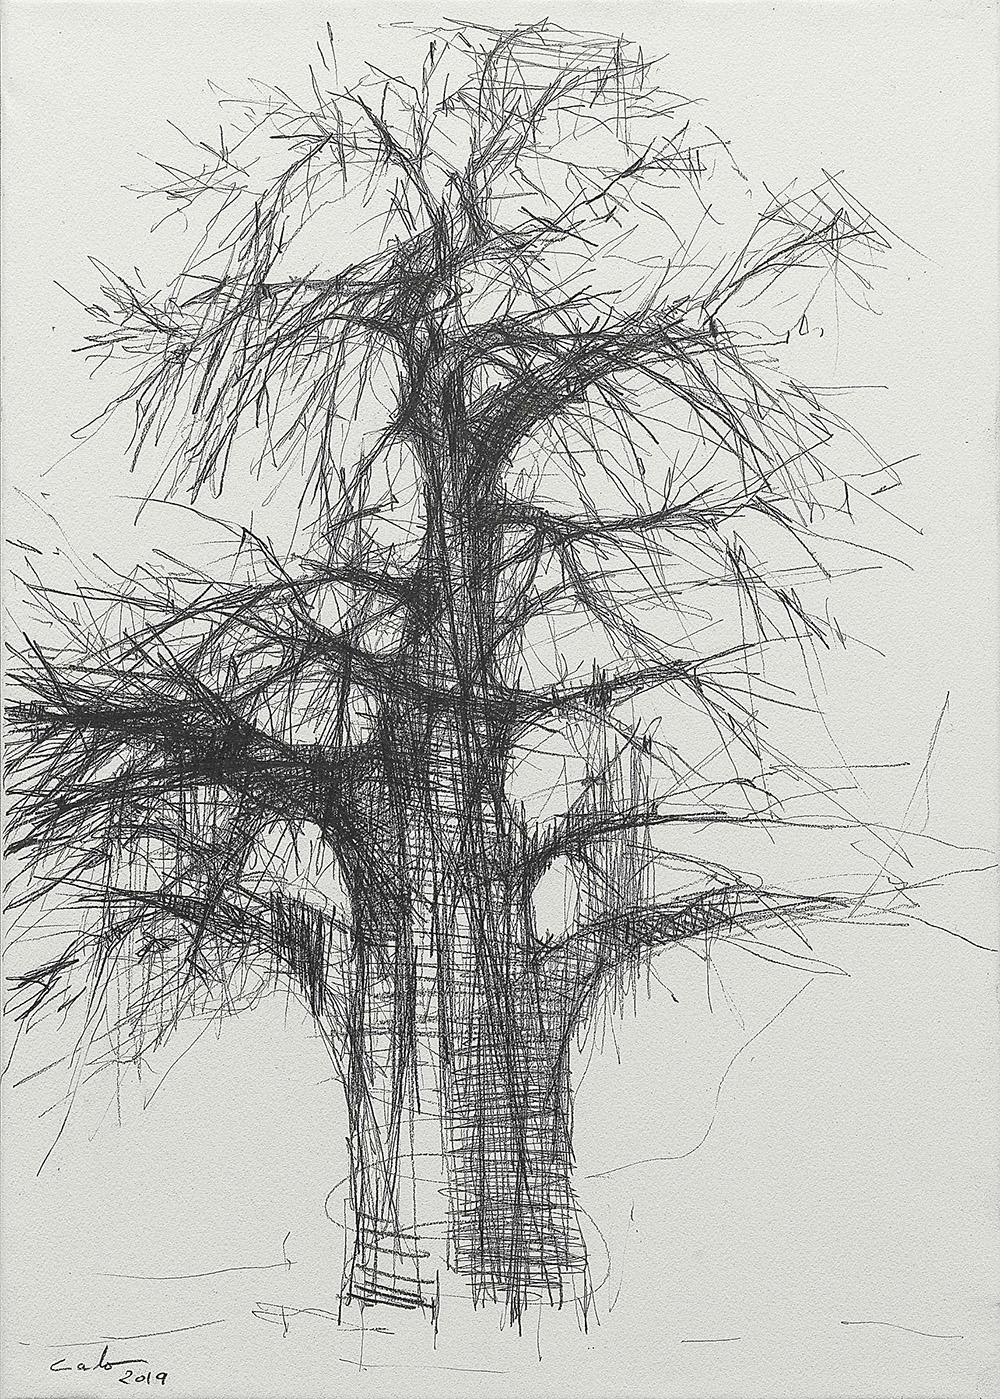 Baobab N3 est un dessin unique de l'artiste contemporain Calo Carratalá, réalisé au graphite sur papier et monté sur un cadre en bois. Les dimensions sont de 65 × 46 cm (25.6 × 18.1 in). Dimensions de l'œuvre encadrée (boîte en méthacrylate) : 67 cm